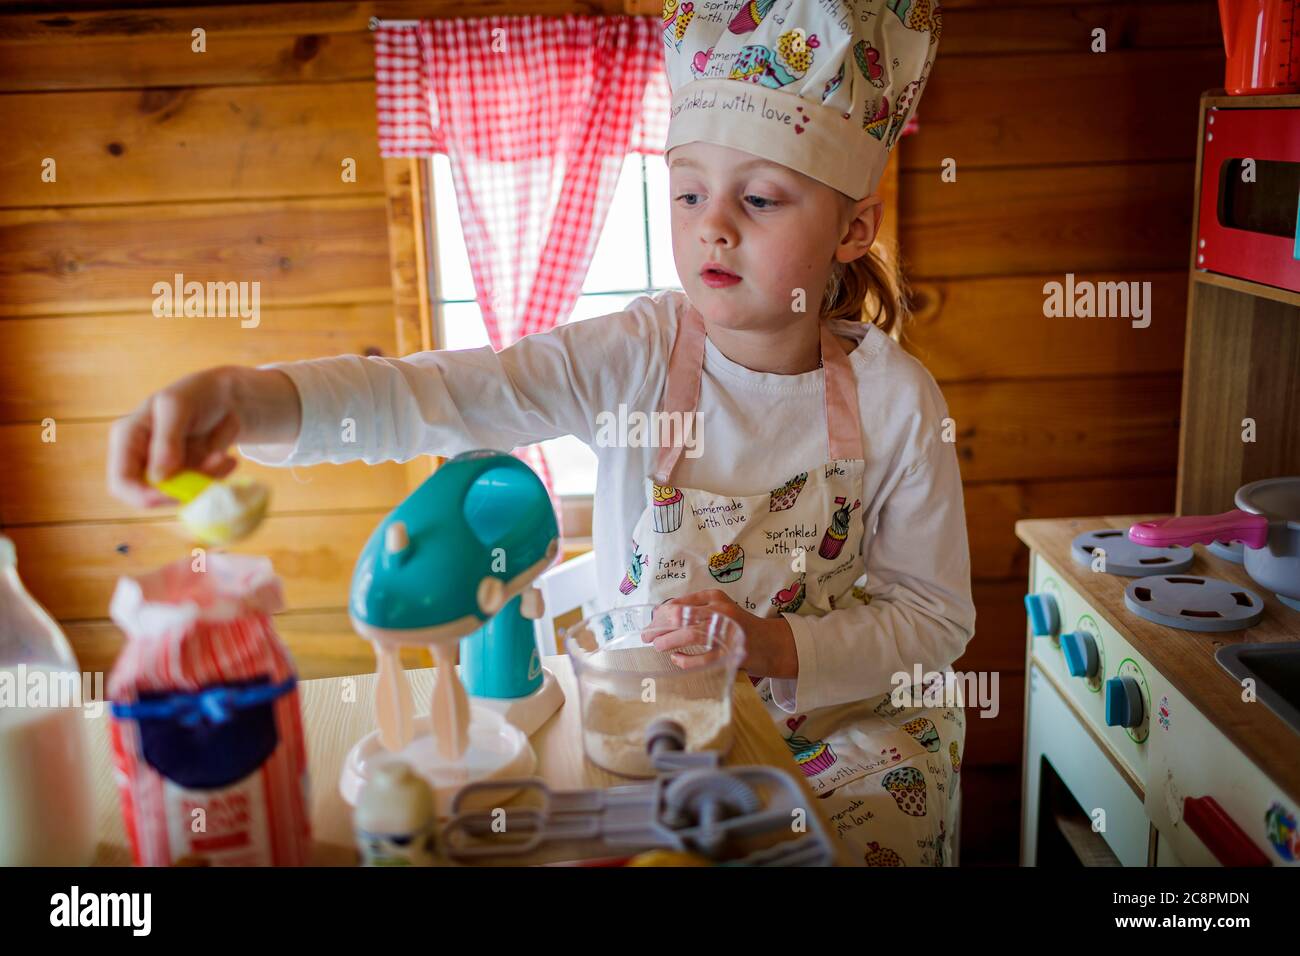 Jeune fille de wendy House prétendant cuisiner dans la cuisine Banque D'Images